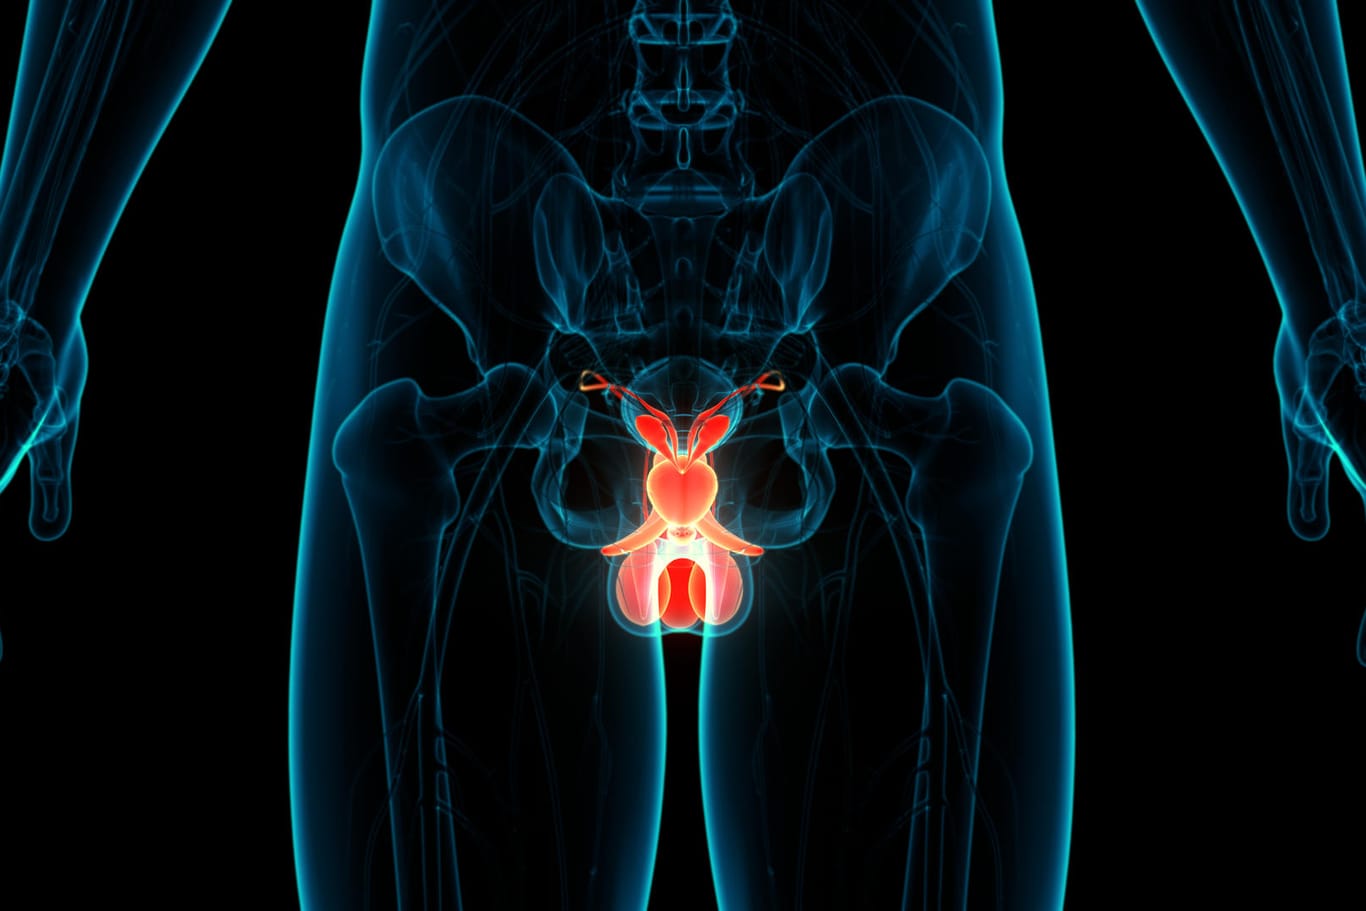 Prostata Illustration: Unkontrollierter Harndrang wird für Männer im Alter häufig zum Problem.